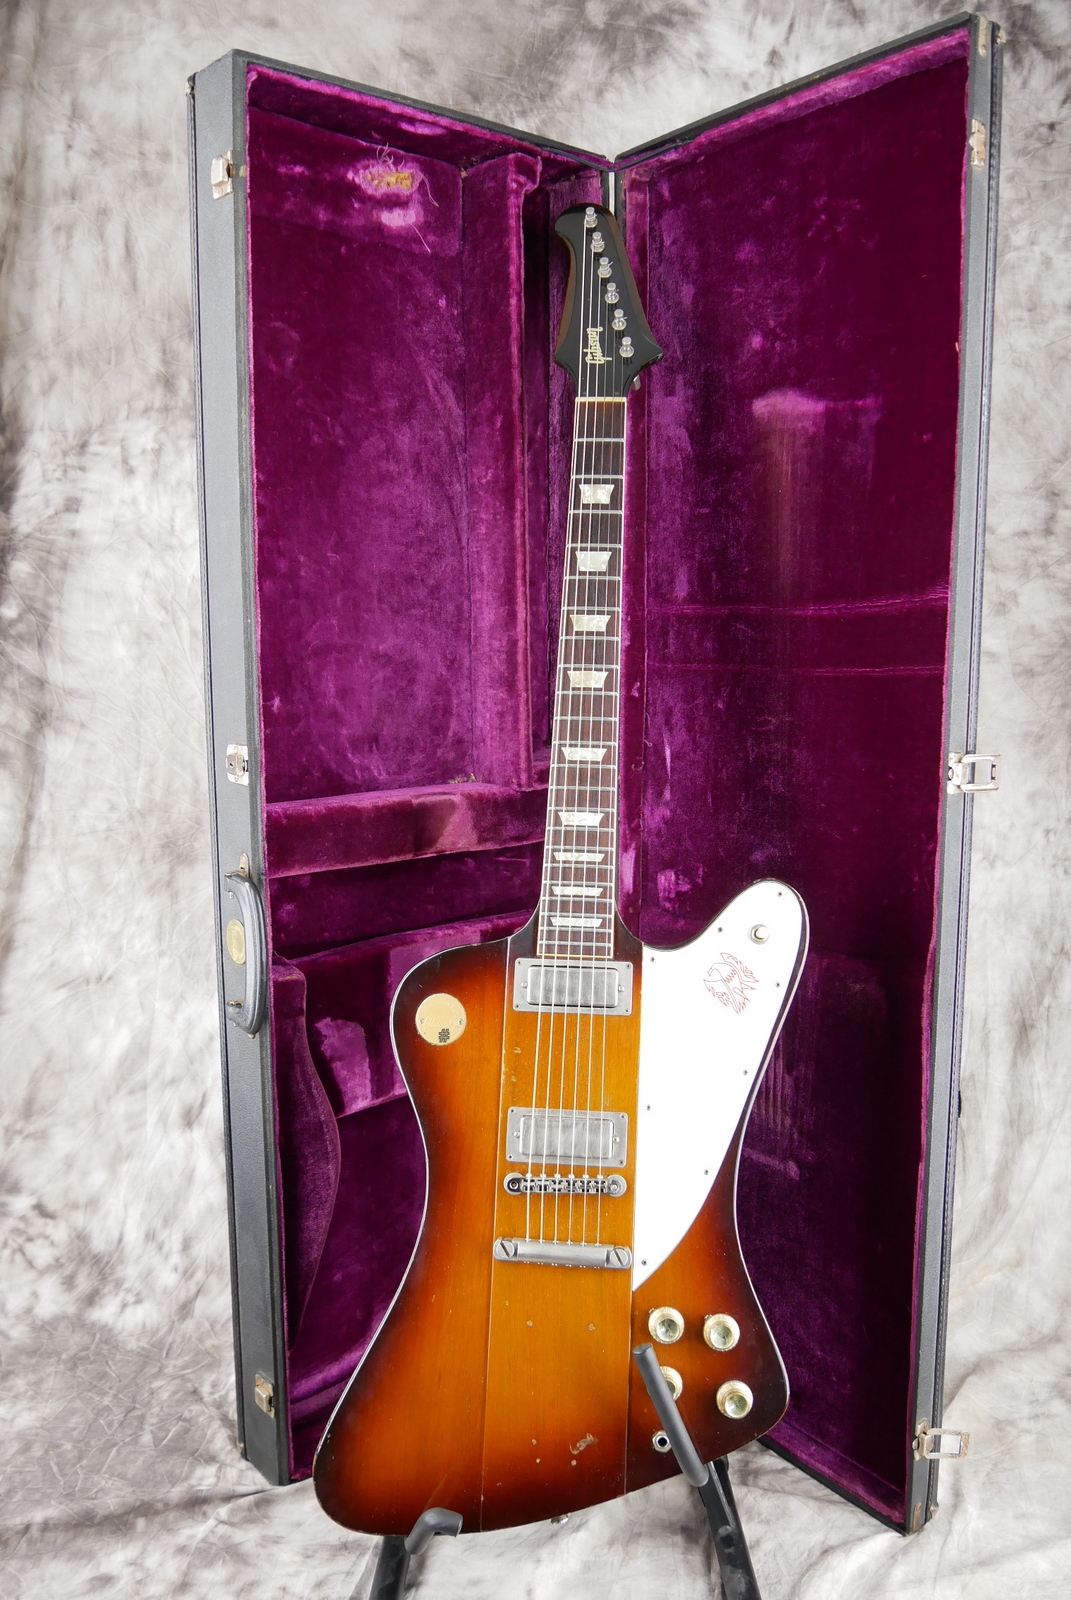 Gibson_Firebird_V_Medallion_limited_edition_sunburst_1972-017.JPG.jpg